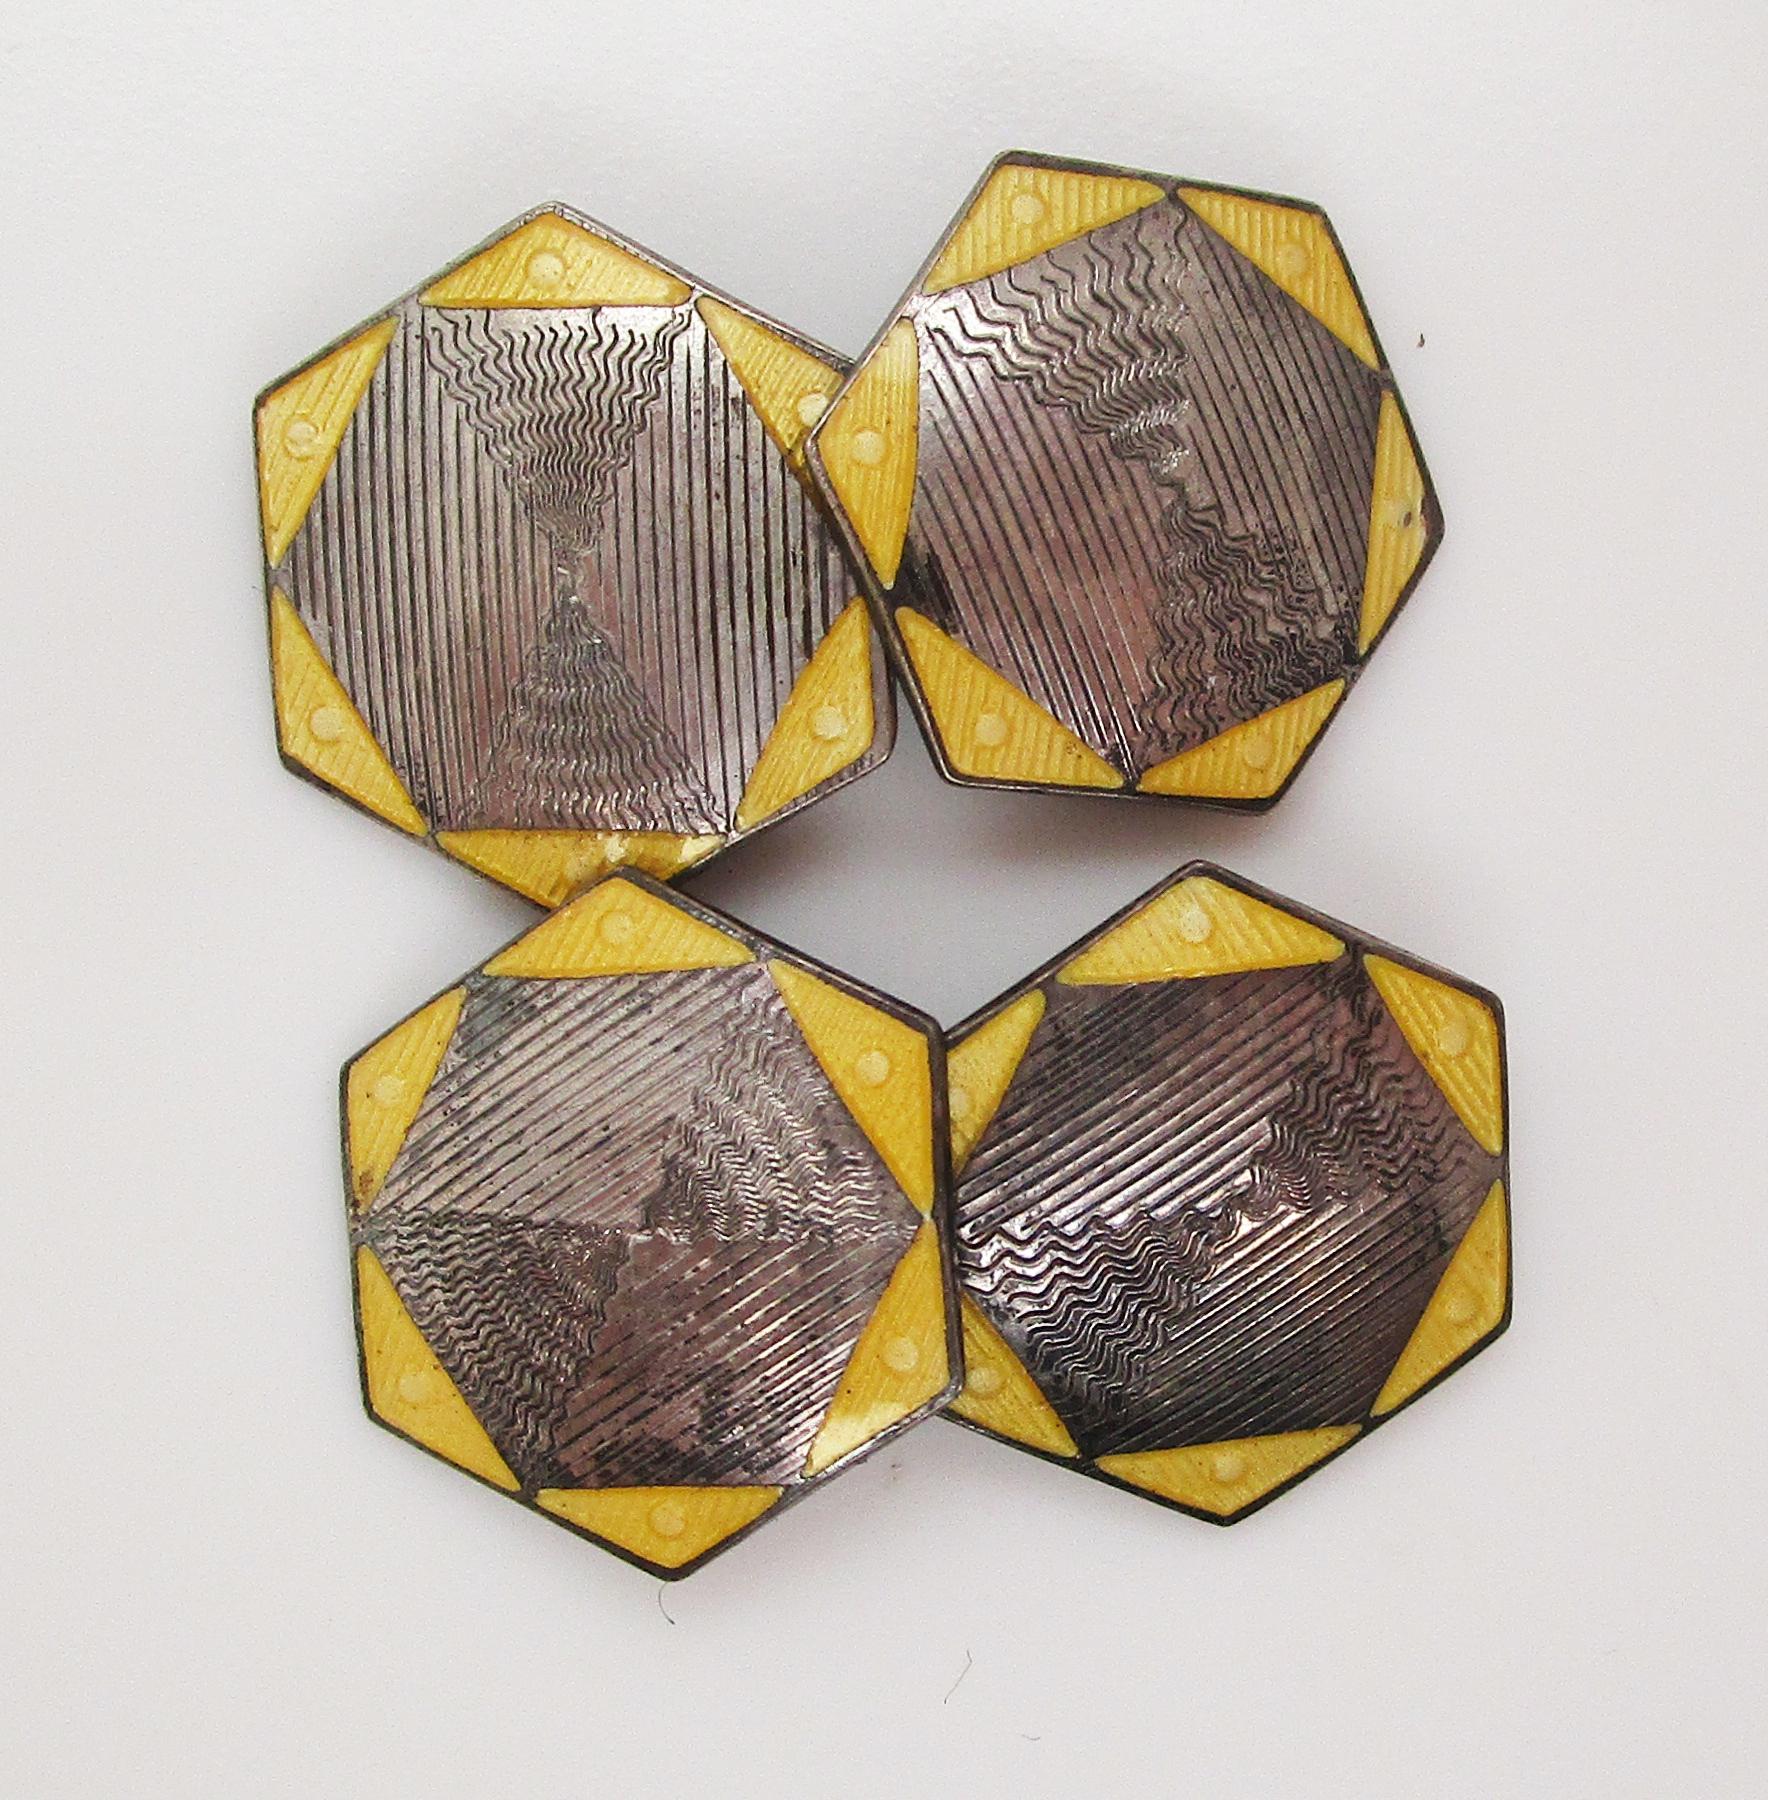 Dies ist ein fantastisches Paar Deko-Manschettenknöpfe aus Sterlingsilber mit einer einzigartigen sechseckigen Form und leuchtend gelber Emaille! Die Mitte jeder Platte ist mit subtilen Details graviert und von Dreiecken aus gelber Emaille